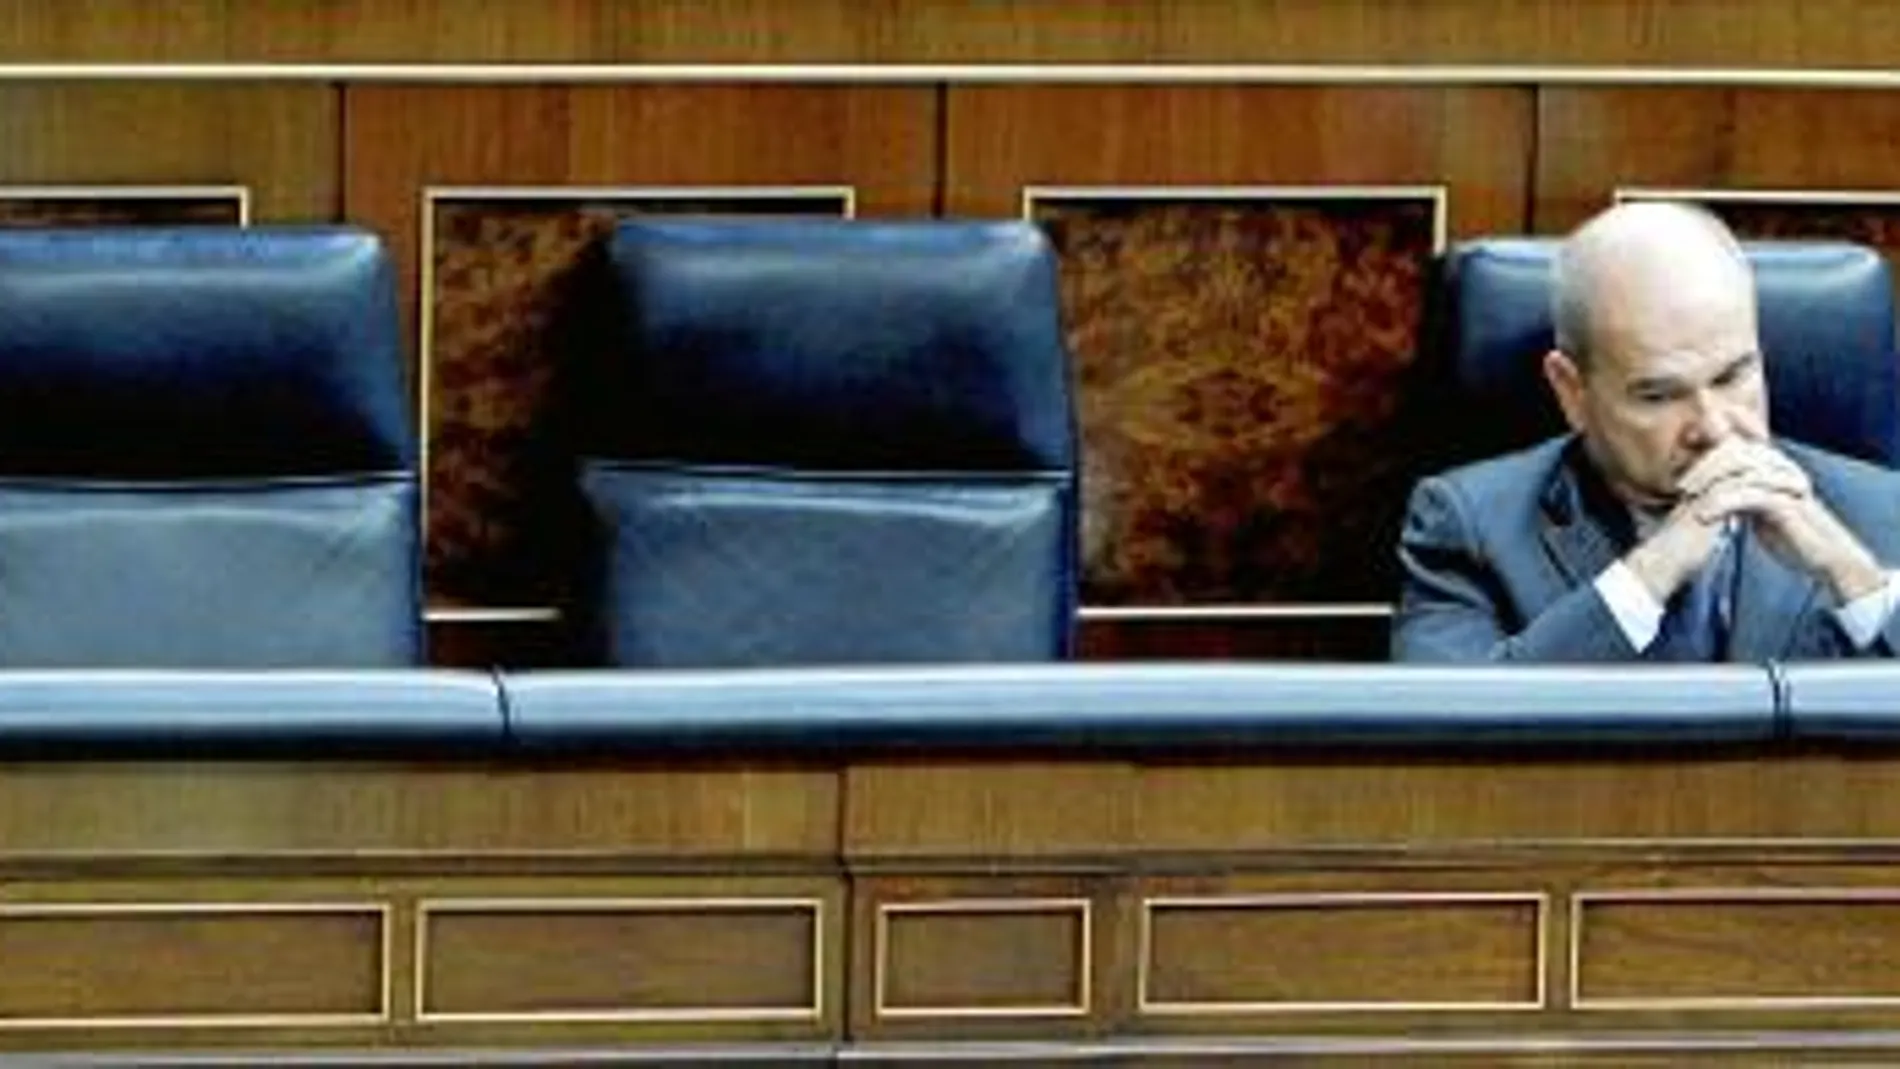 El presidente del PSOE, Manuel Chaves, criticó ayer en los pasillos del Congreso la decisión de su partido